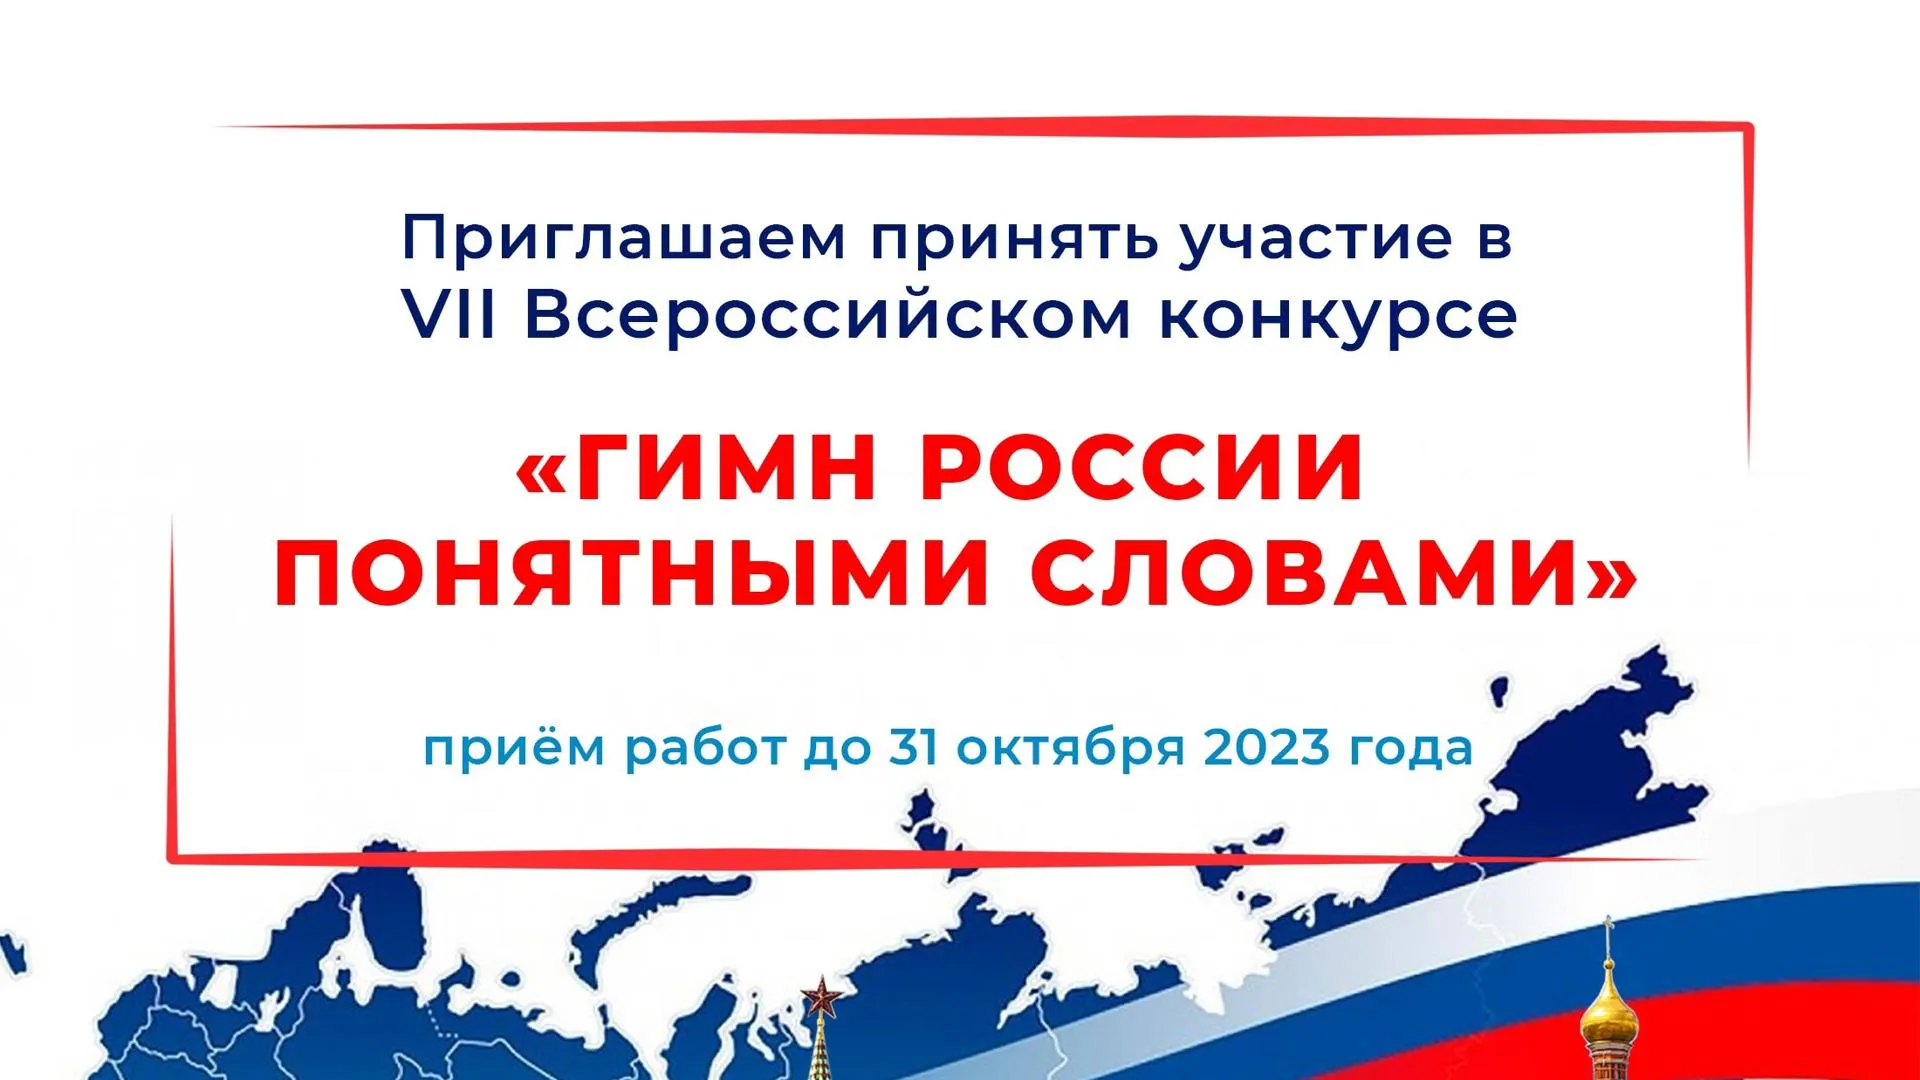 Жители РФ до 31 октября могут отправить работы на конкурс «Гимн России понятными словами»